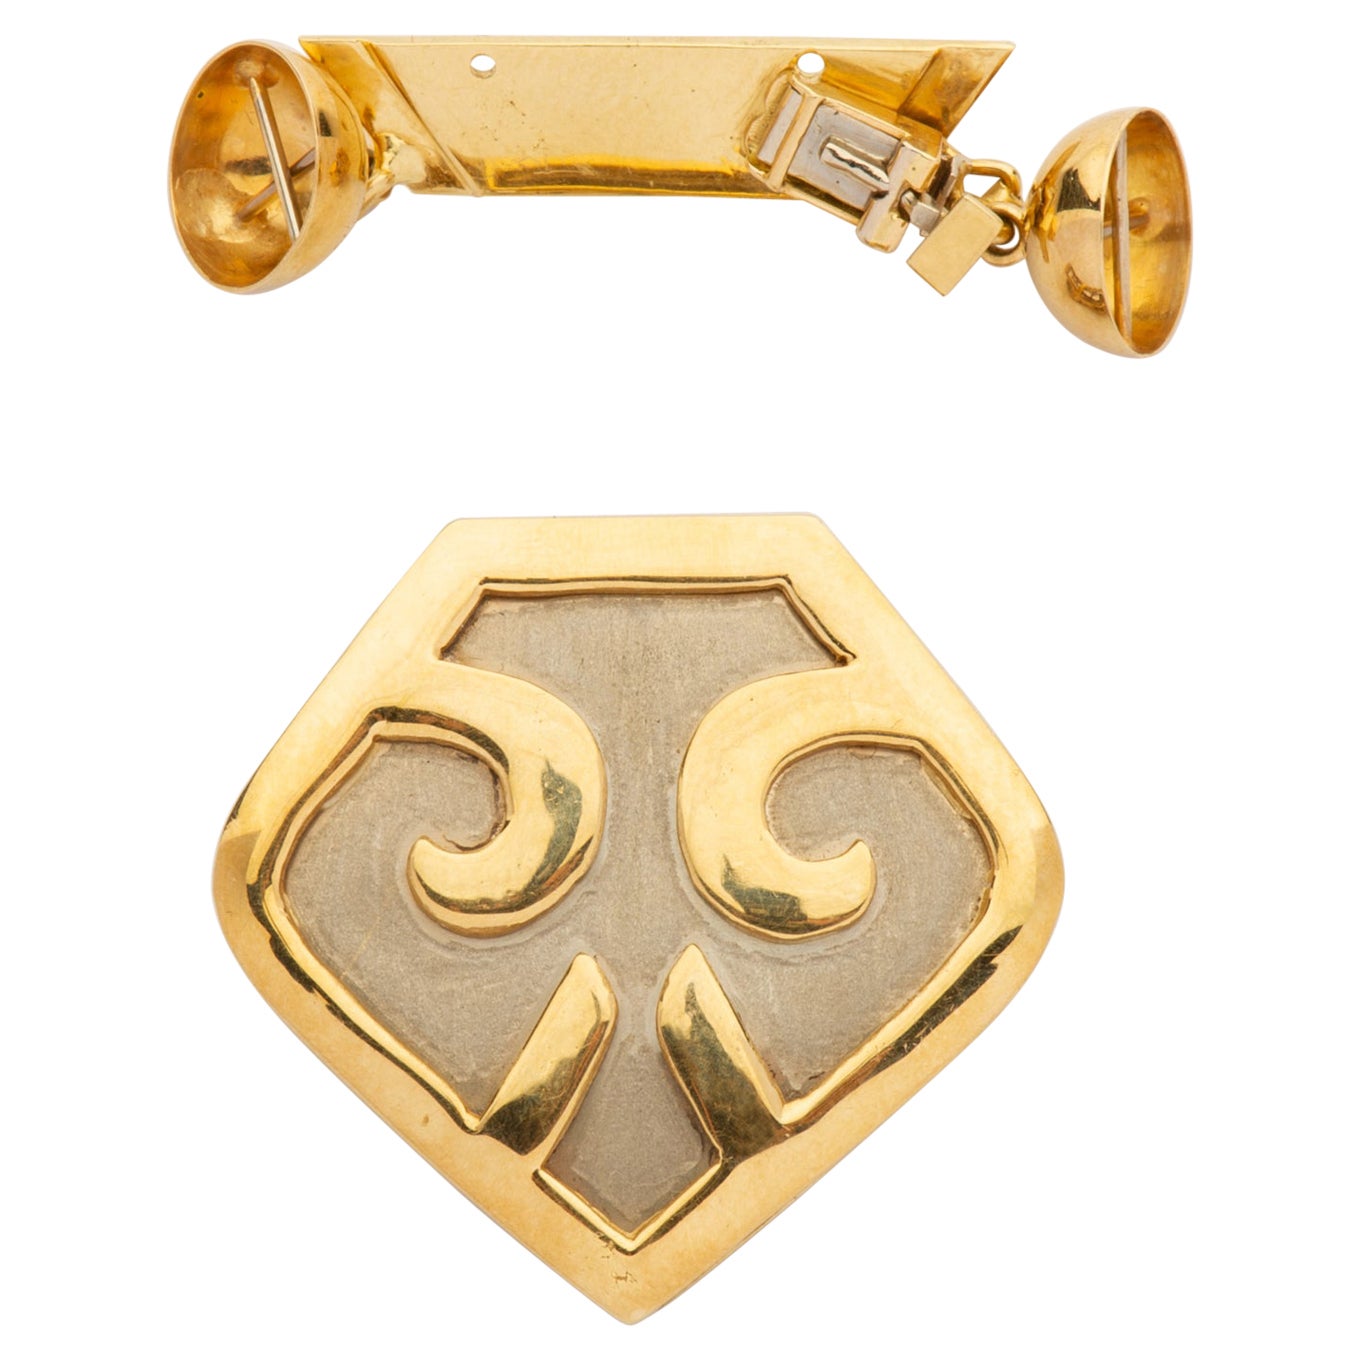 Verschluss aus Gold für Halskette mit kaukasischem Teppichsymbol